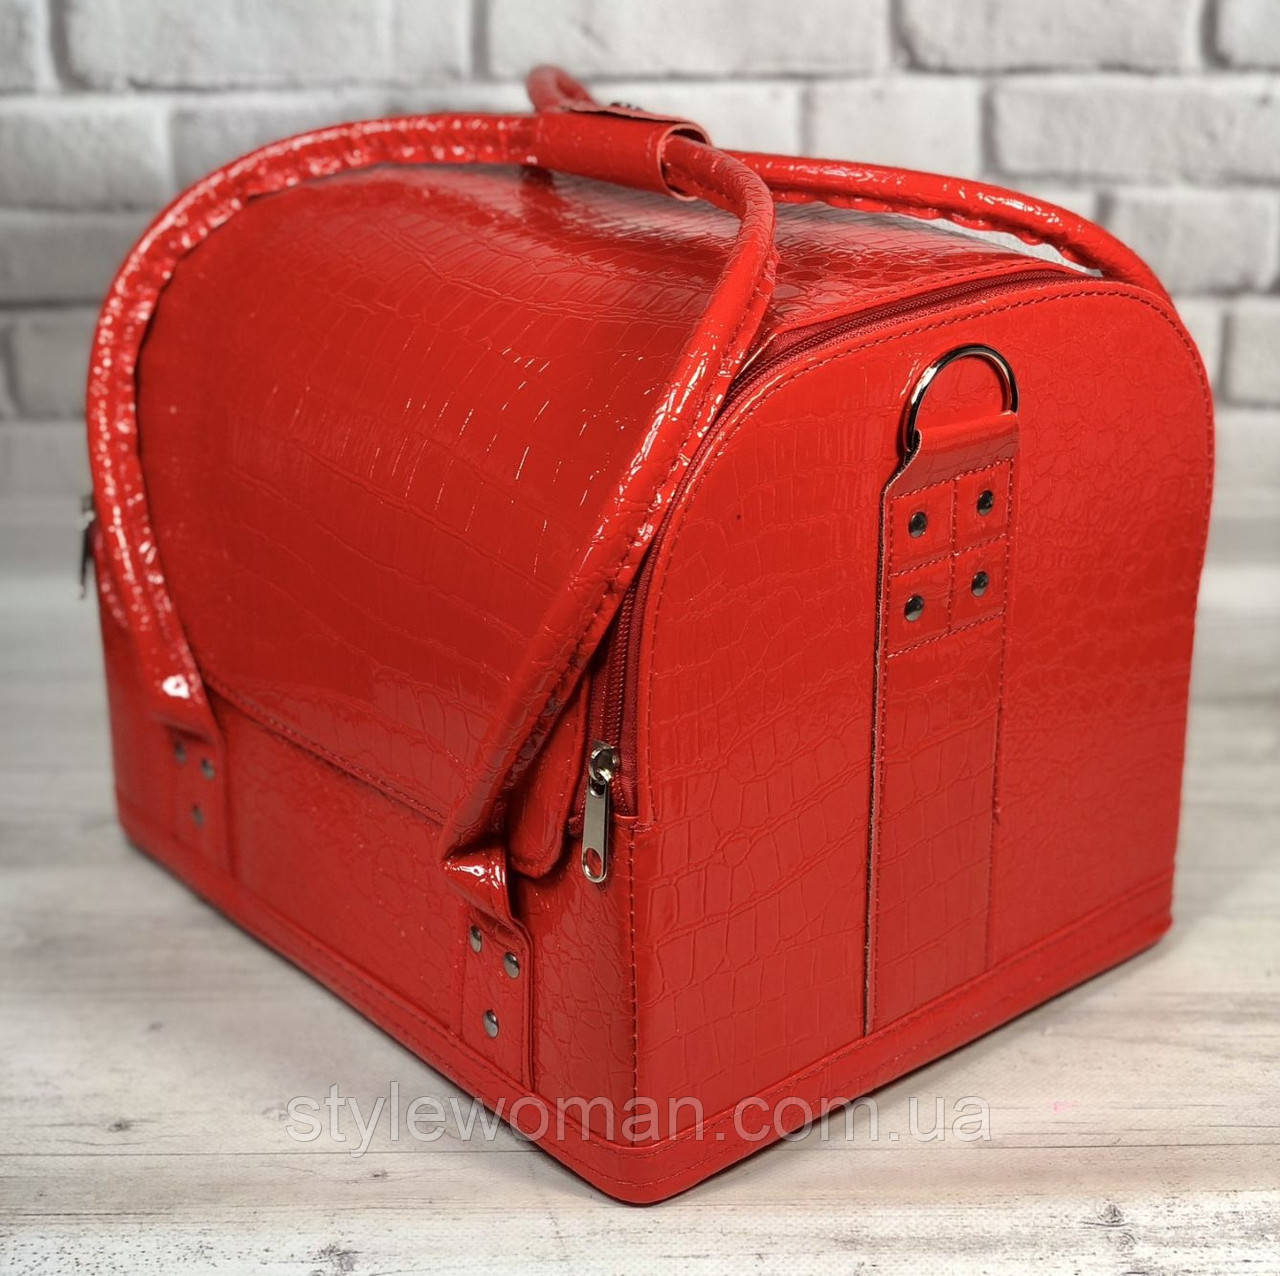 Б'юті кейс валіза для майстра салонів краси зі шкірозамінника на змійці червона крихта